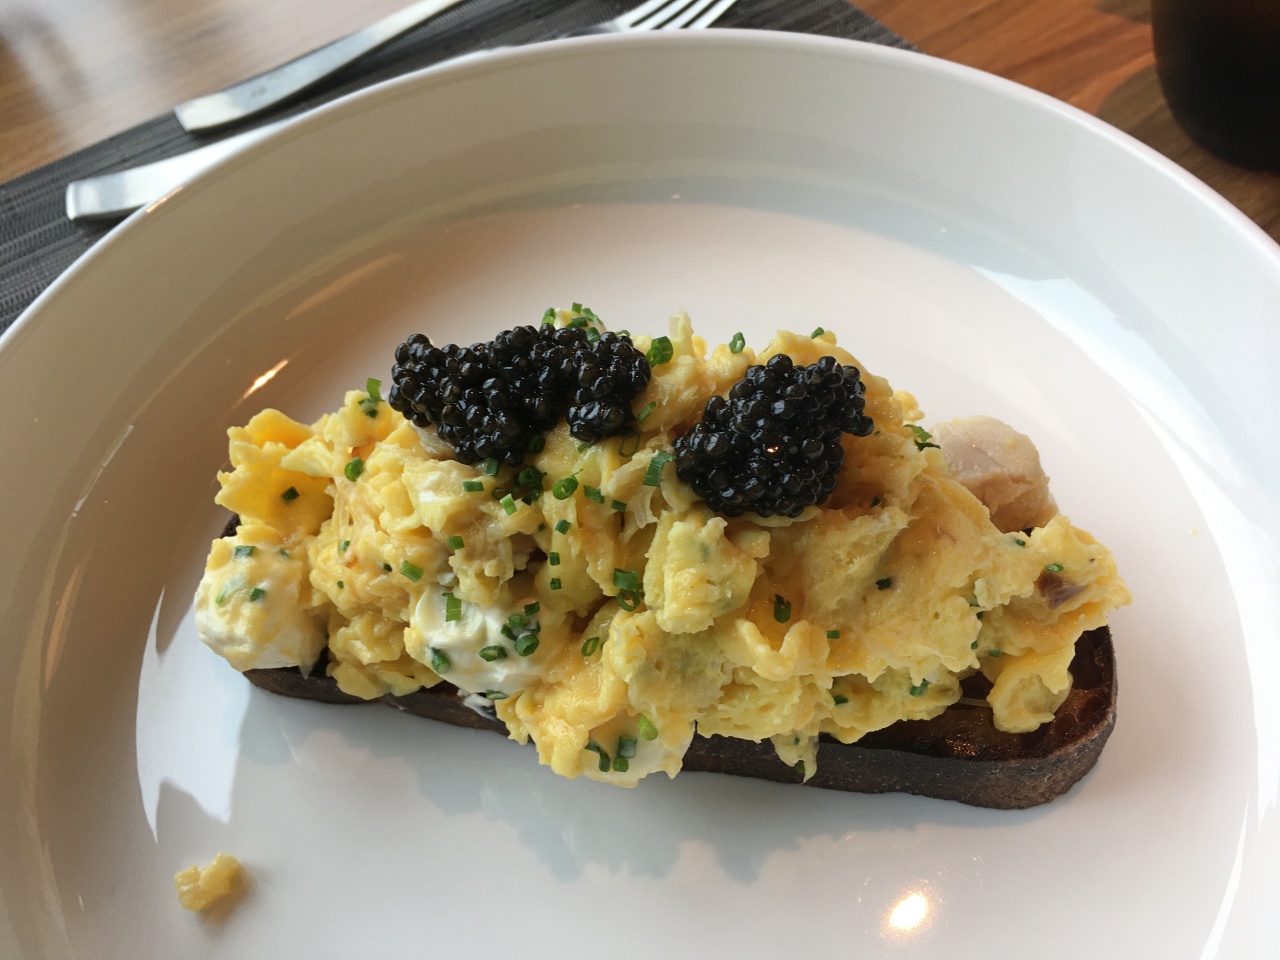 Caviar Tartine with Smoked Sturgeon